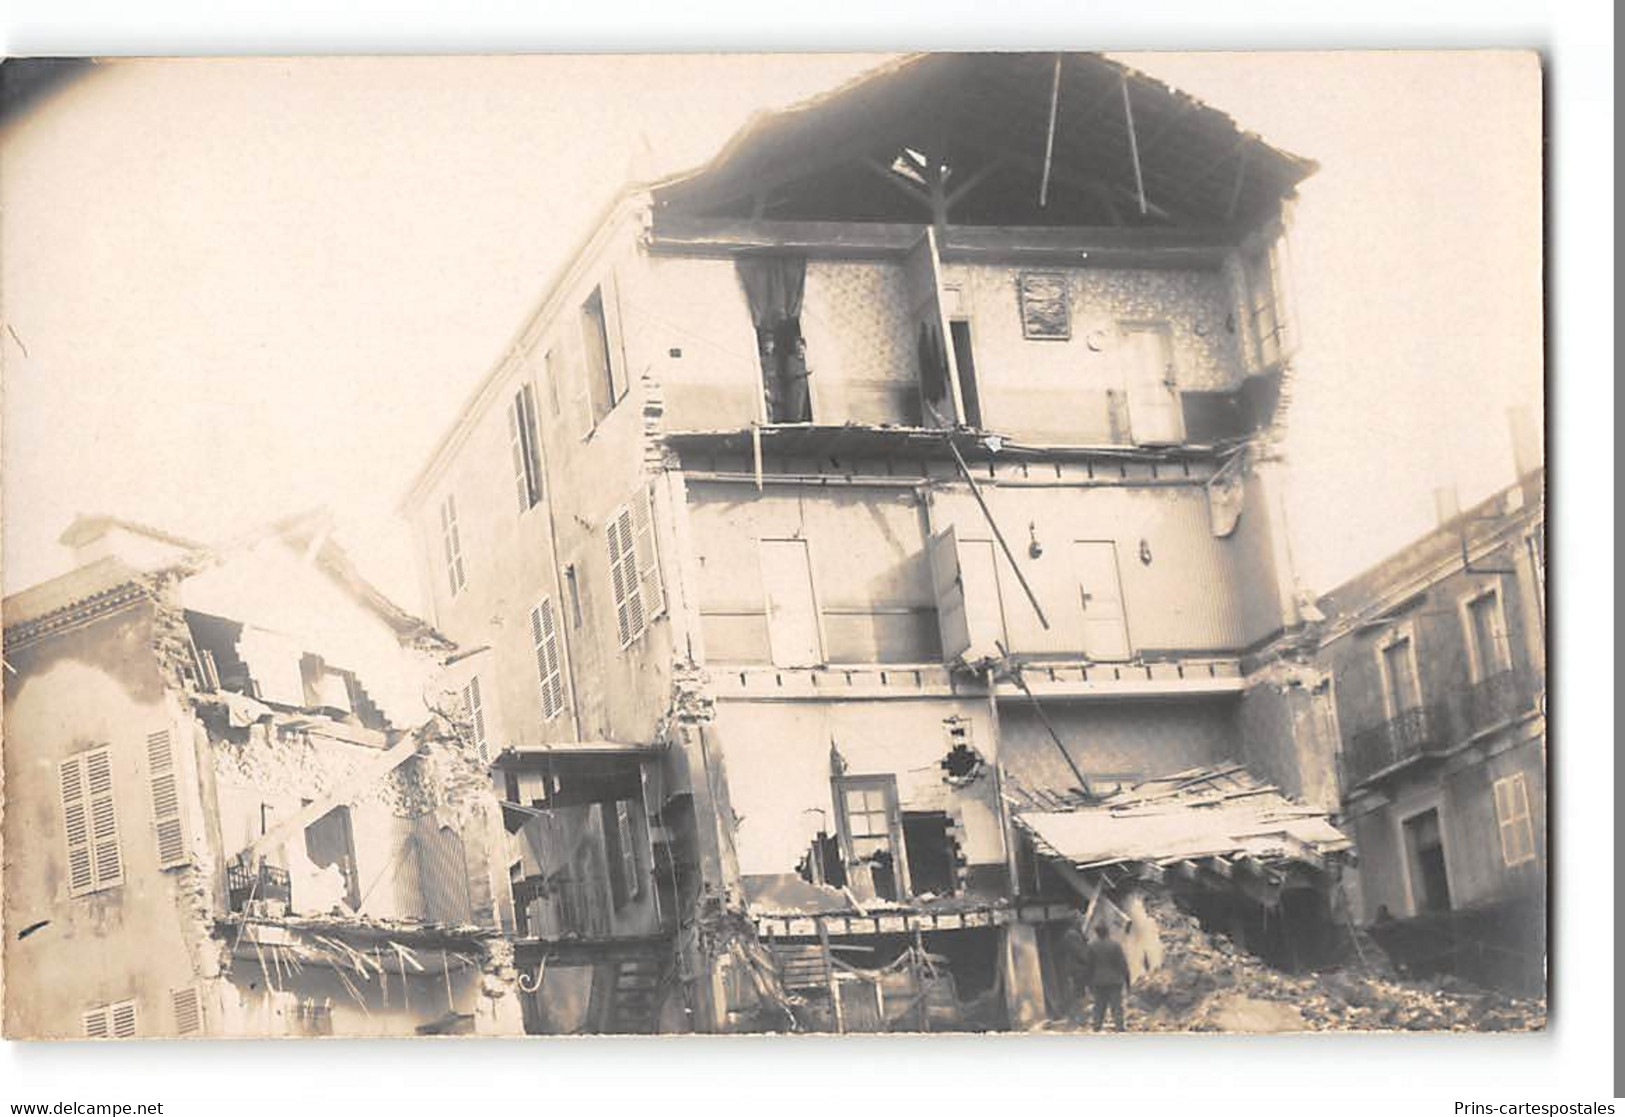 Lot de 11 cartes Photos sur la Catastrophe de Mostaganem 1927 - inondation + texte à lire